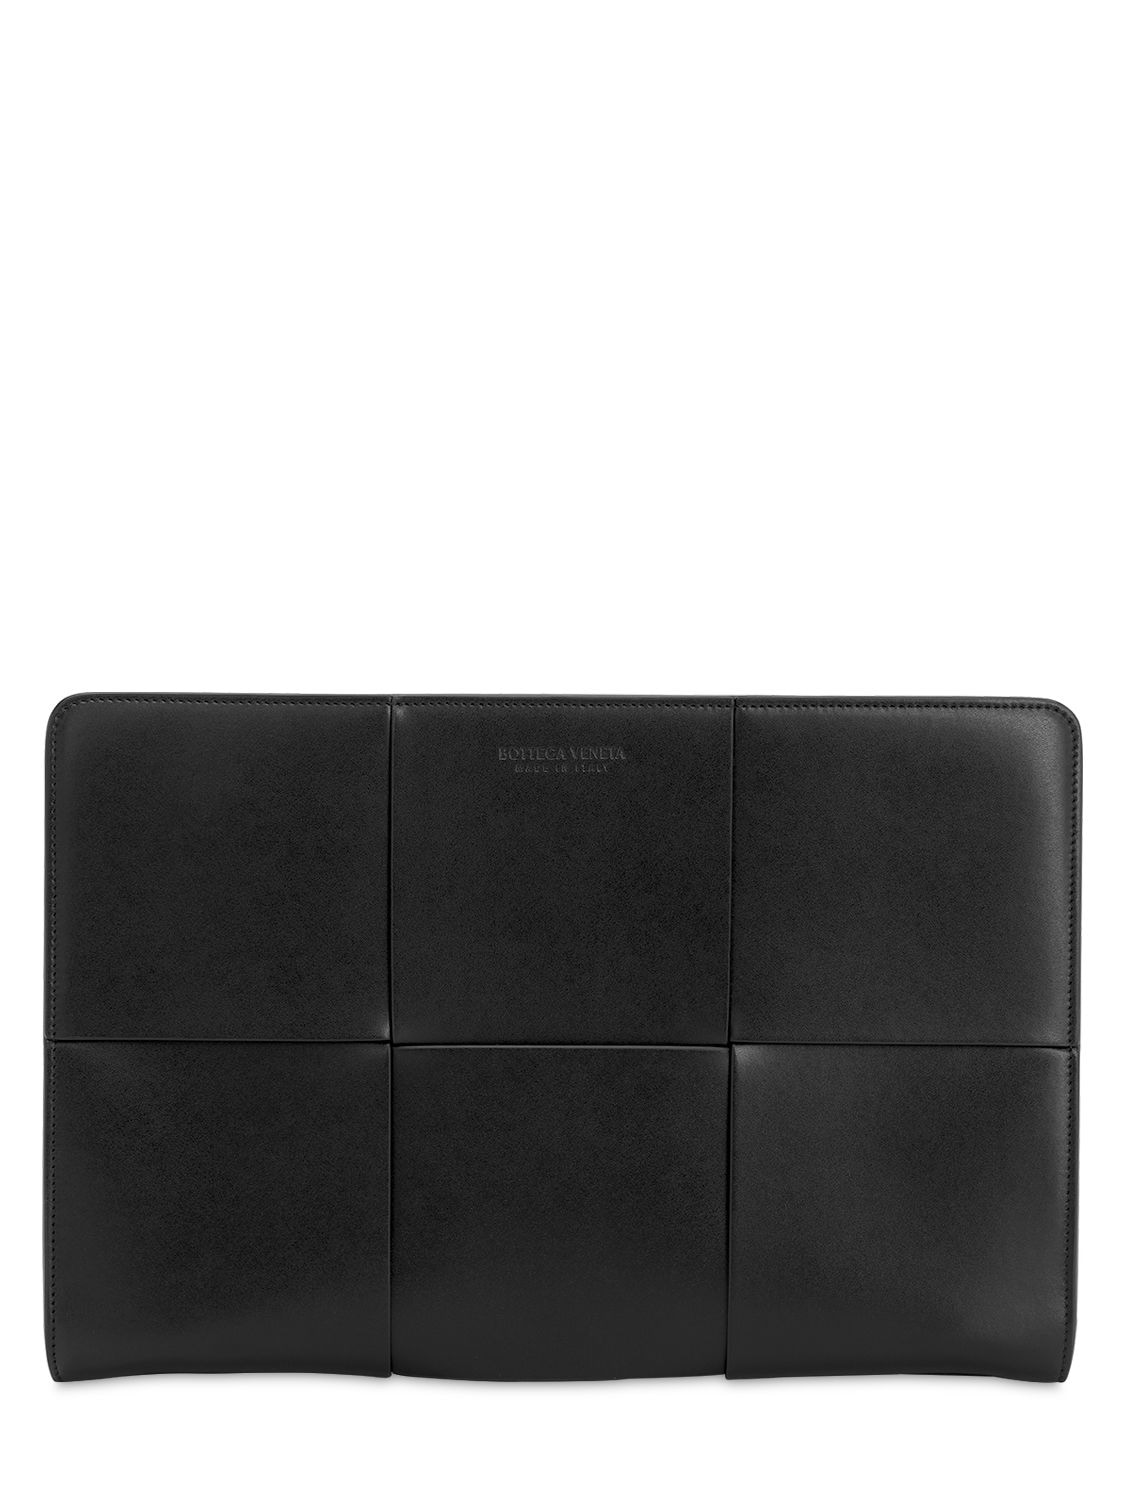 Bottega Veneta Maxi Intreccio Leather Document Case In Black